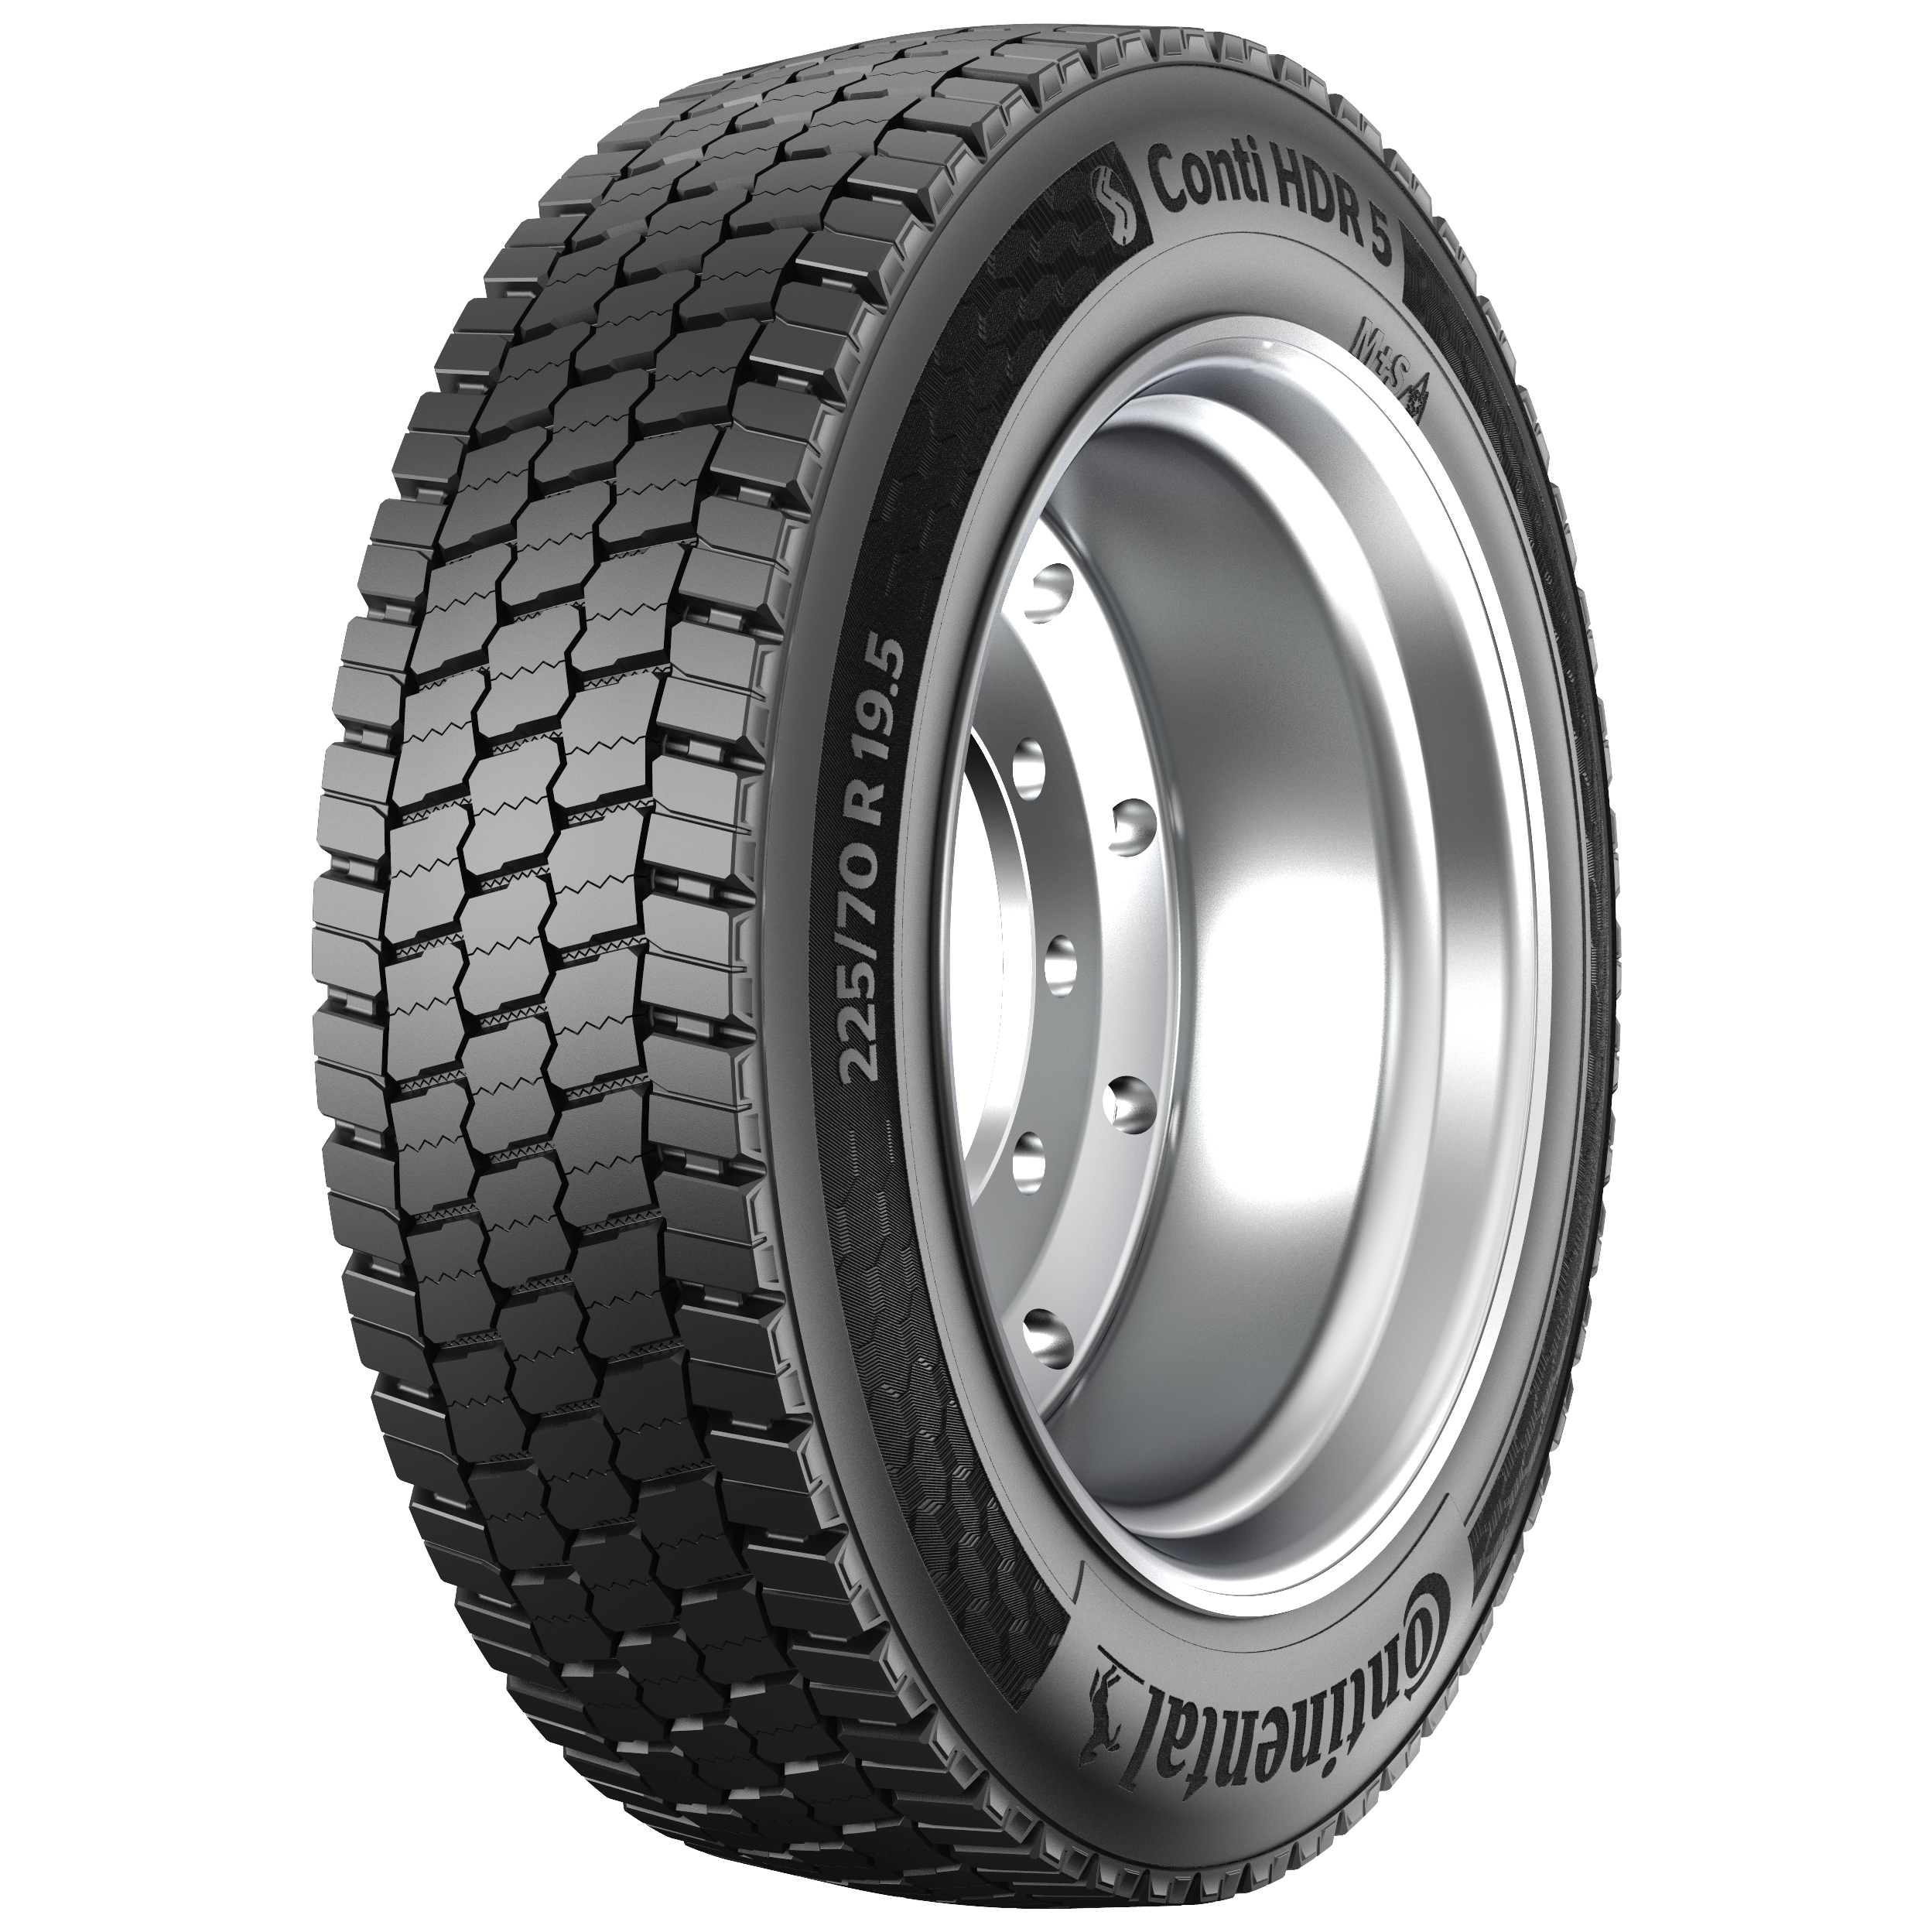 Conti HDR 5 19.5 Tire